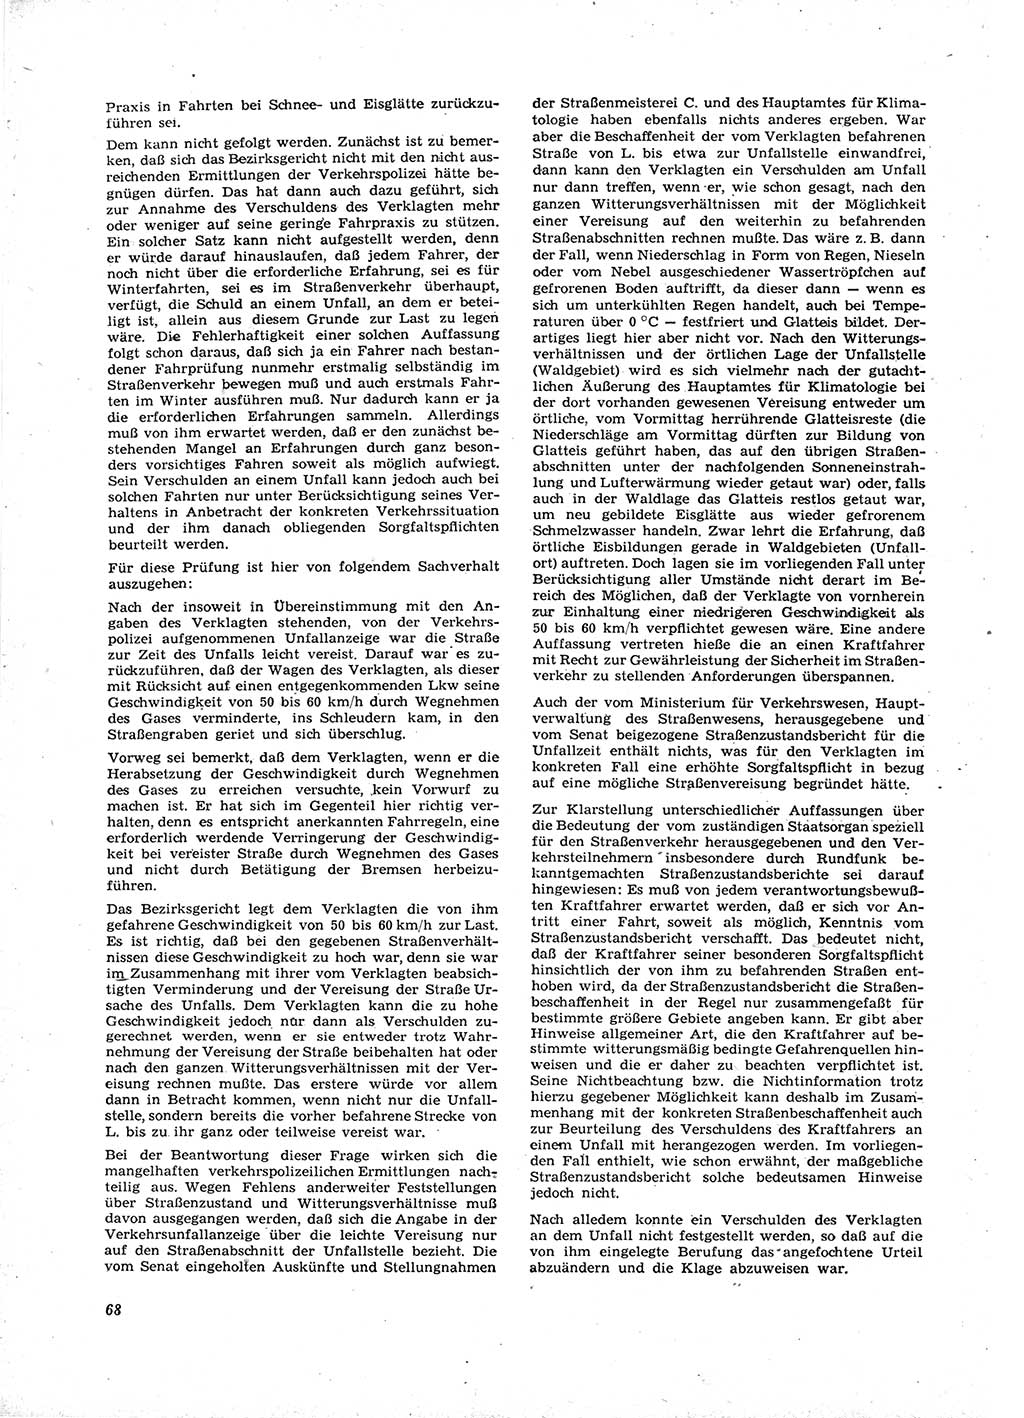 Neue Justiz (NJ), Zeitschrift für Recht und Rechtswissenschaft [Deutsche Demokratische Republik (DDR)], 16. Jahrgang 1962, Seite 68 (NJ DDR 1962, S. 68)